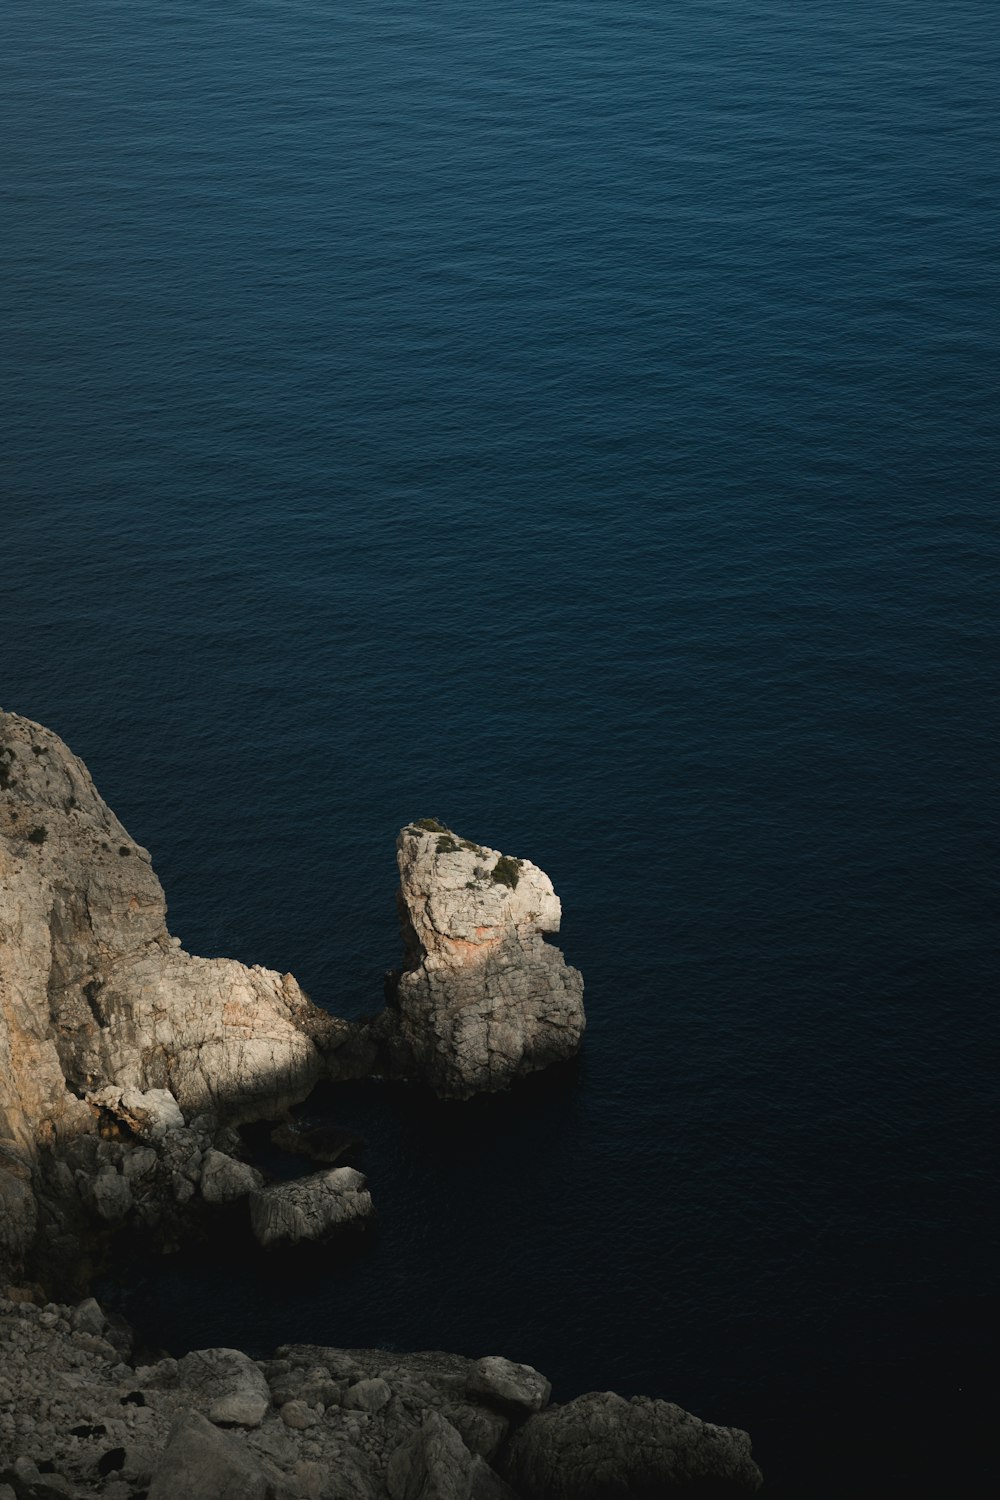 Un oiseau solitaire assis sur un rocher près de l’océan